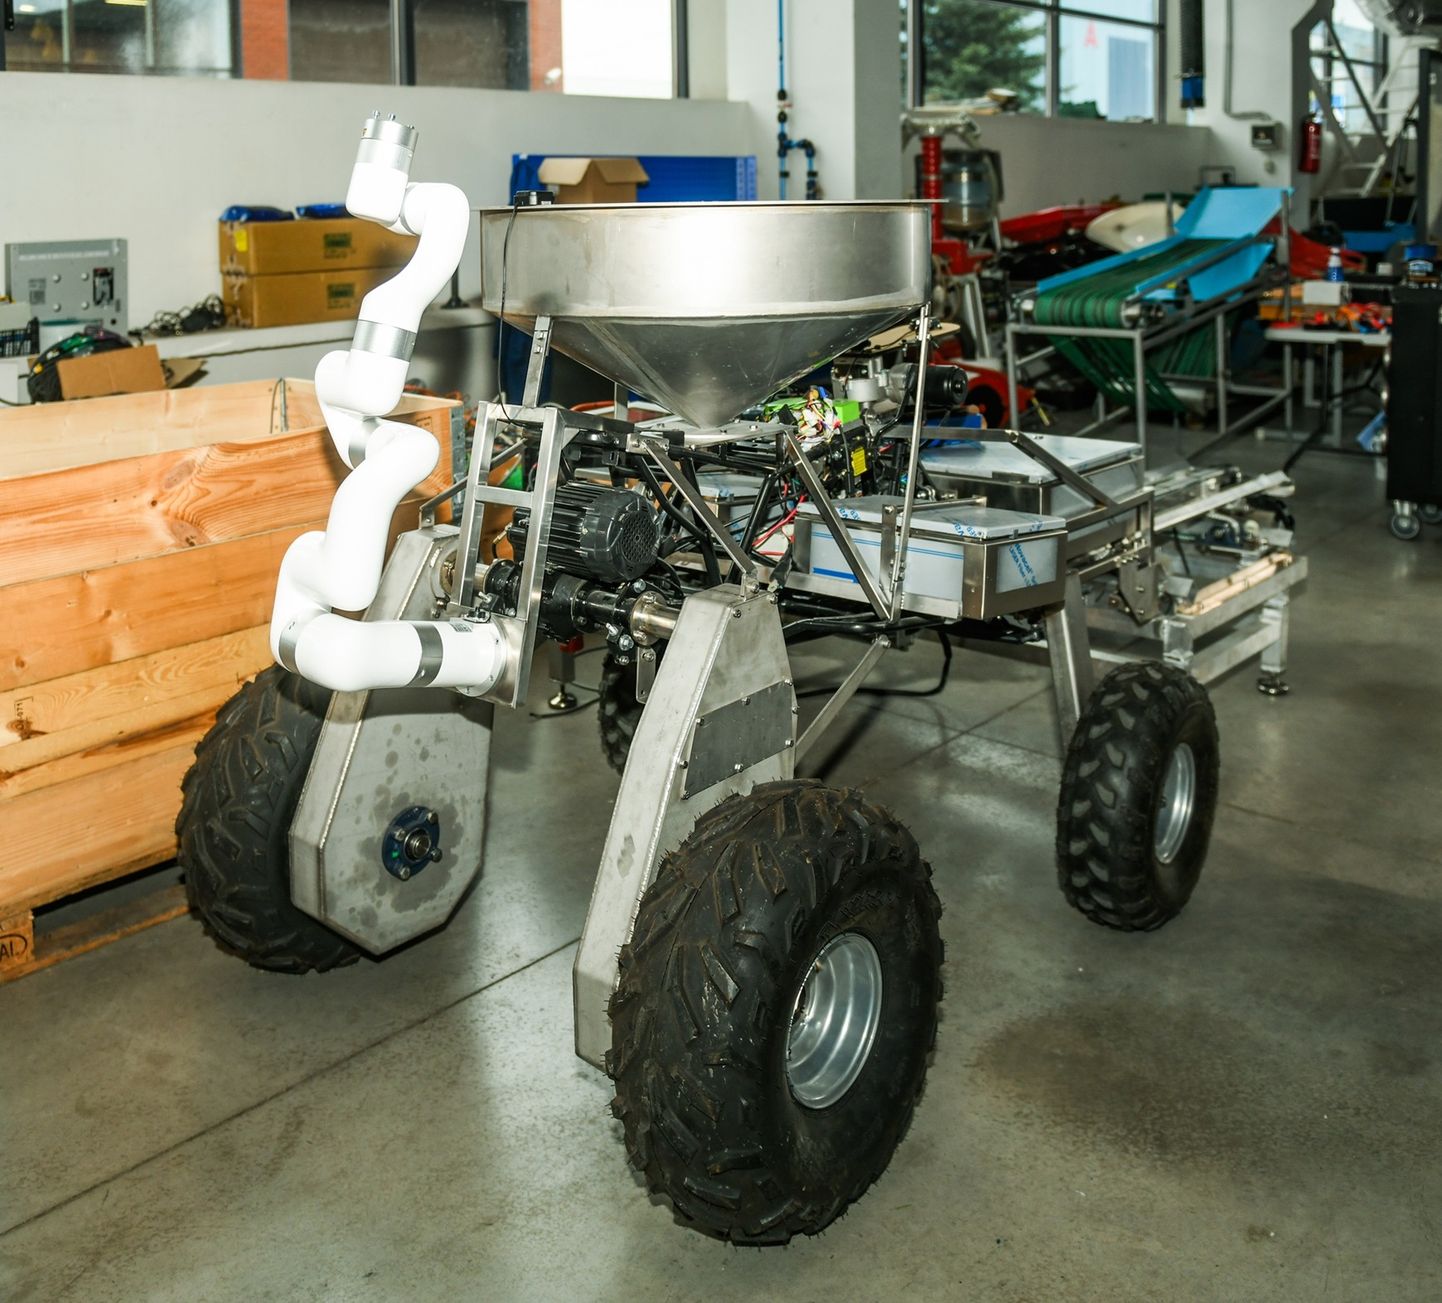 Robotväeturi ning selle autonoomse hooldejaama ja akuvahetusseadme prototüübiga on võimalik tutvuda 18.-20. aprillini toimuval Maamessil.